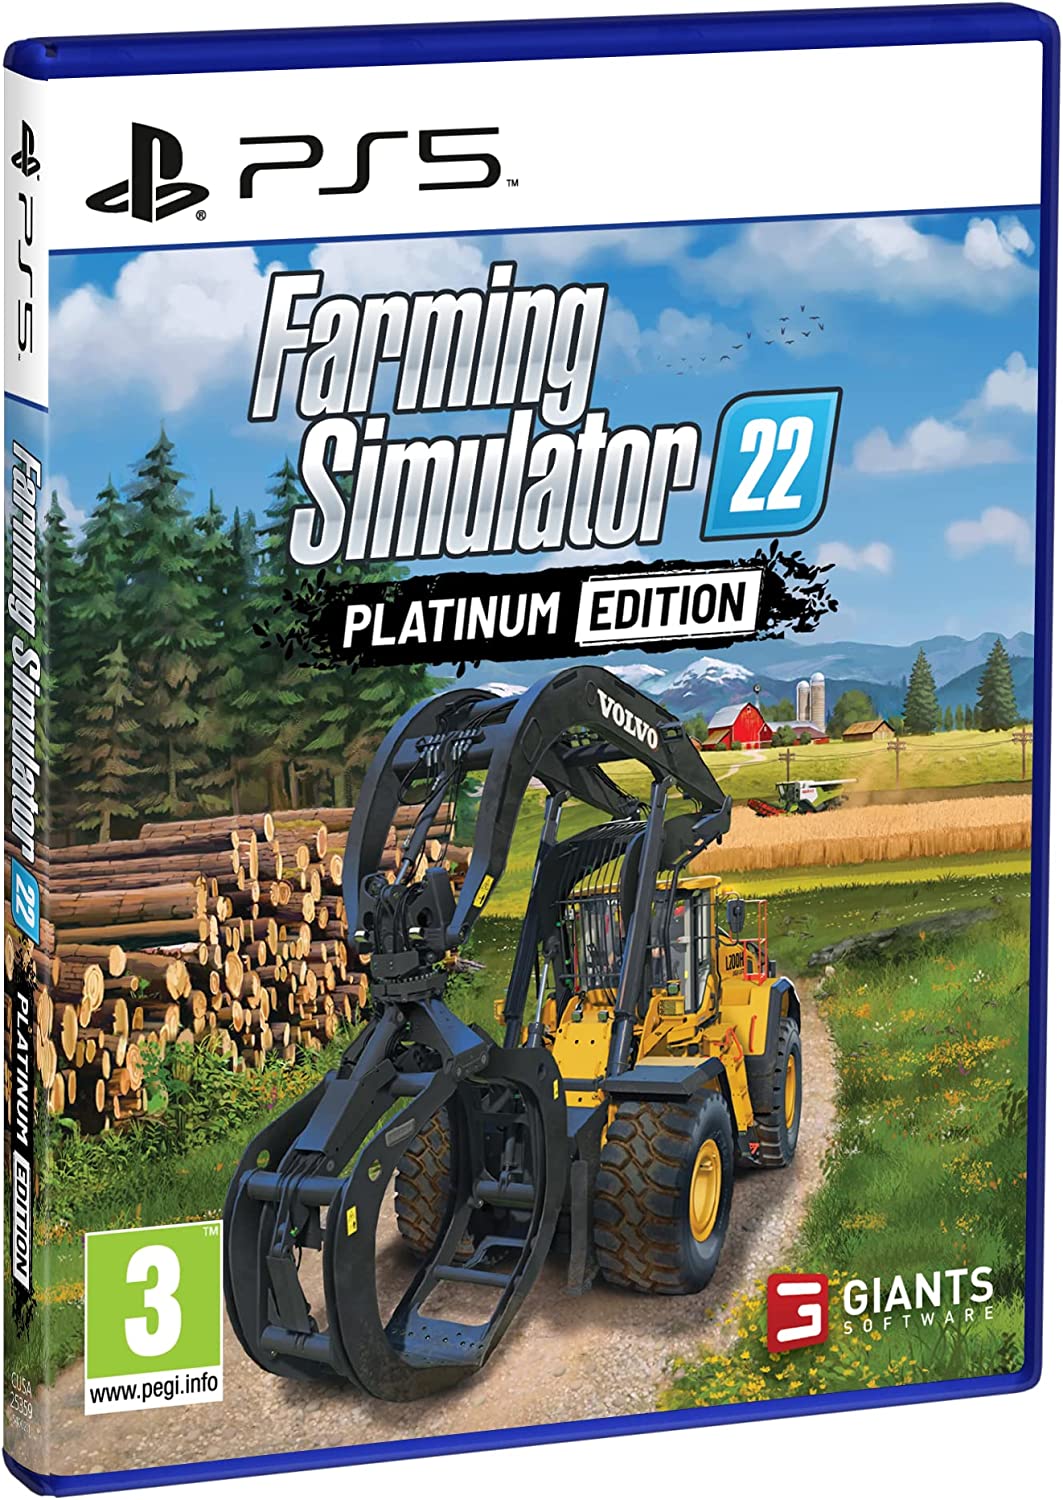 Farming Simulator 22 - Jogos para PS4 e PS5